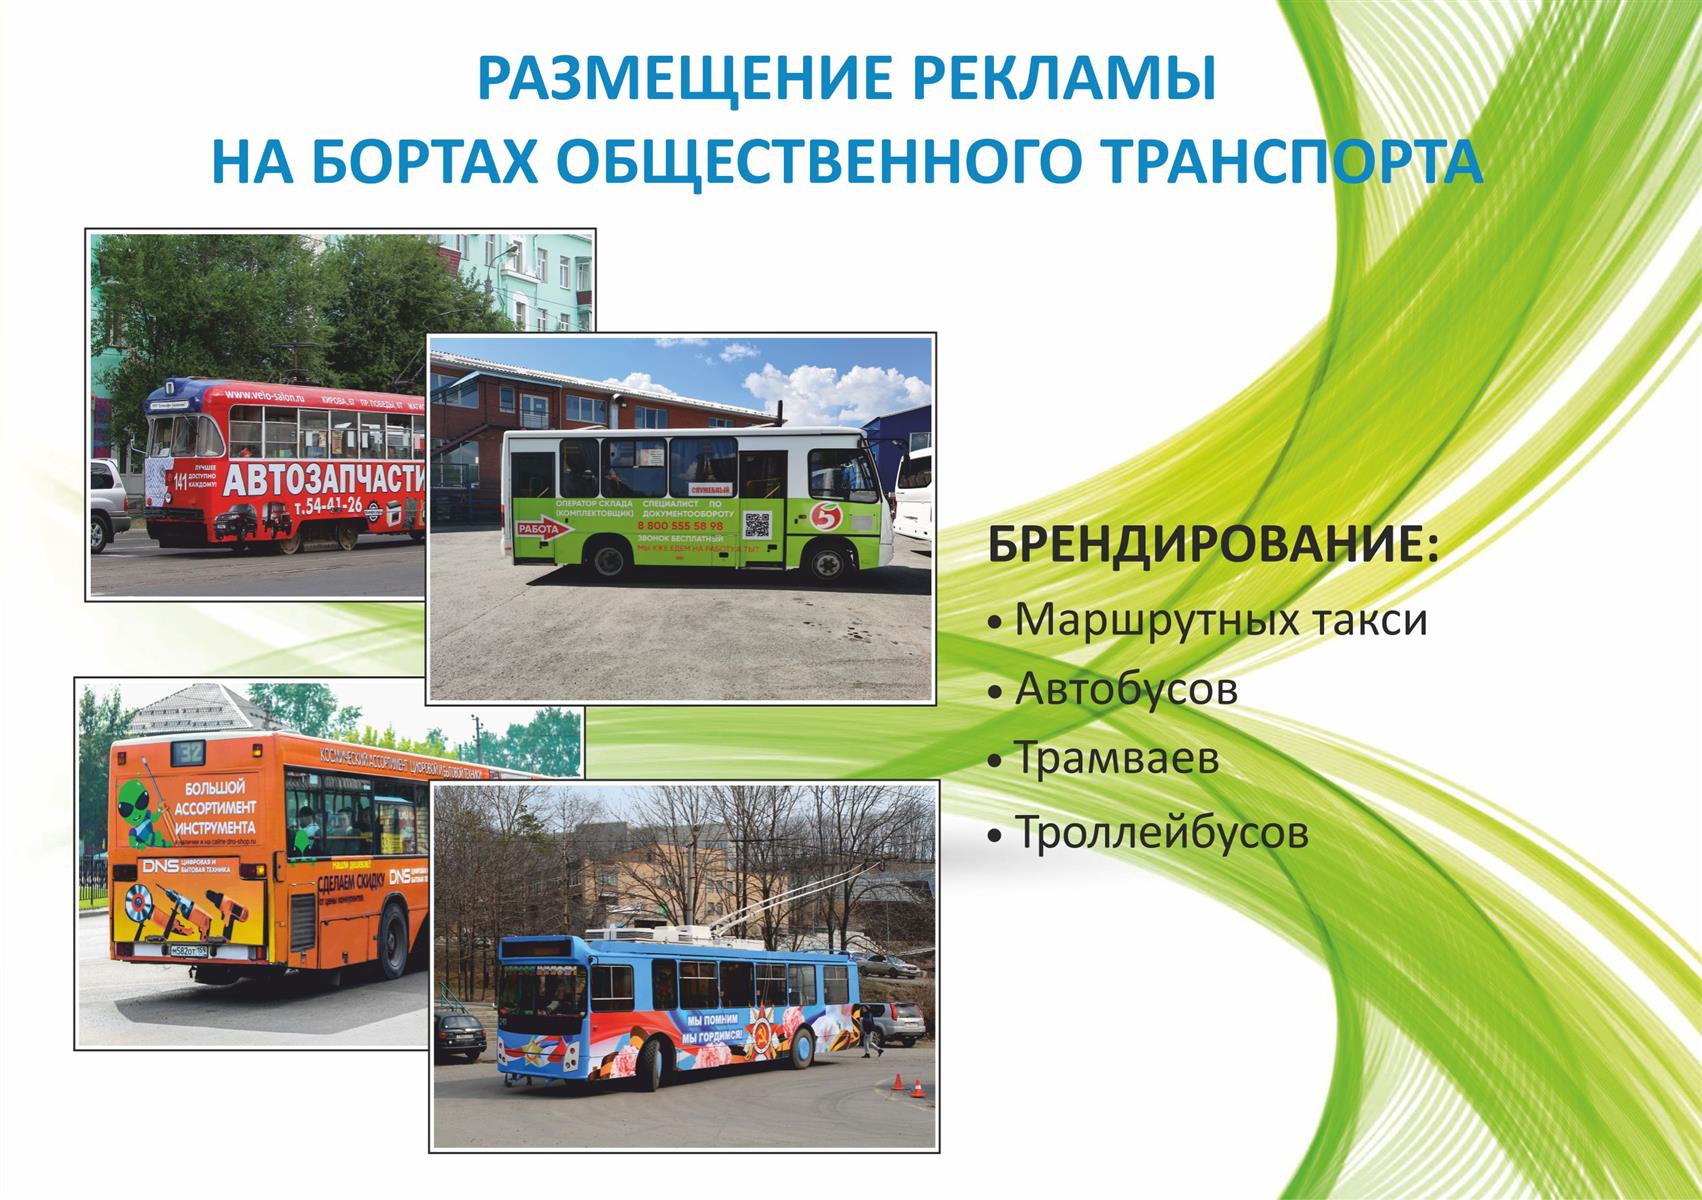 Общественный транспорт презентации